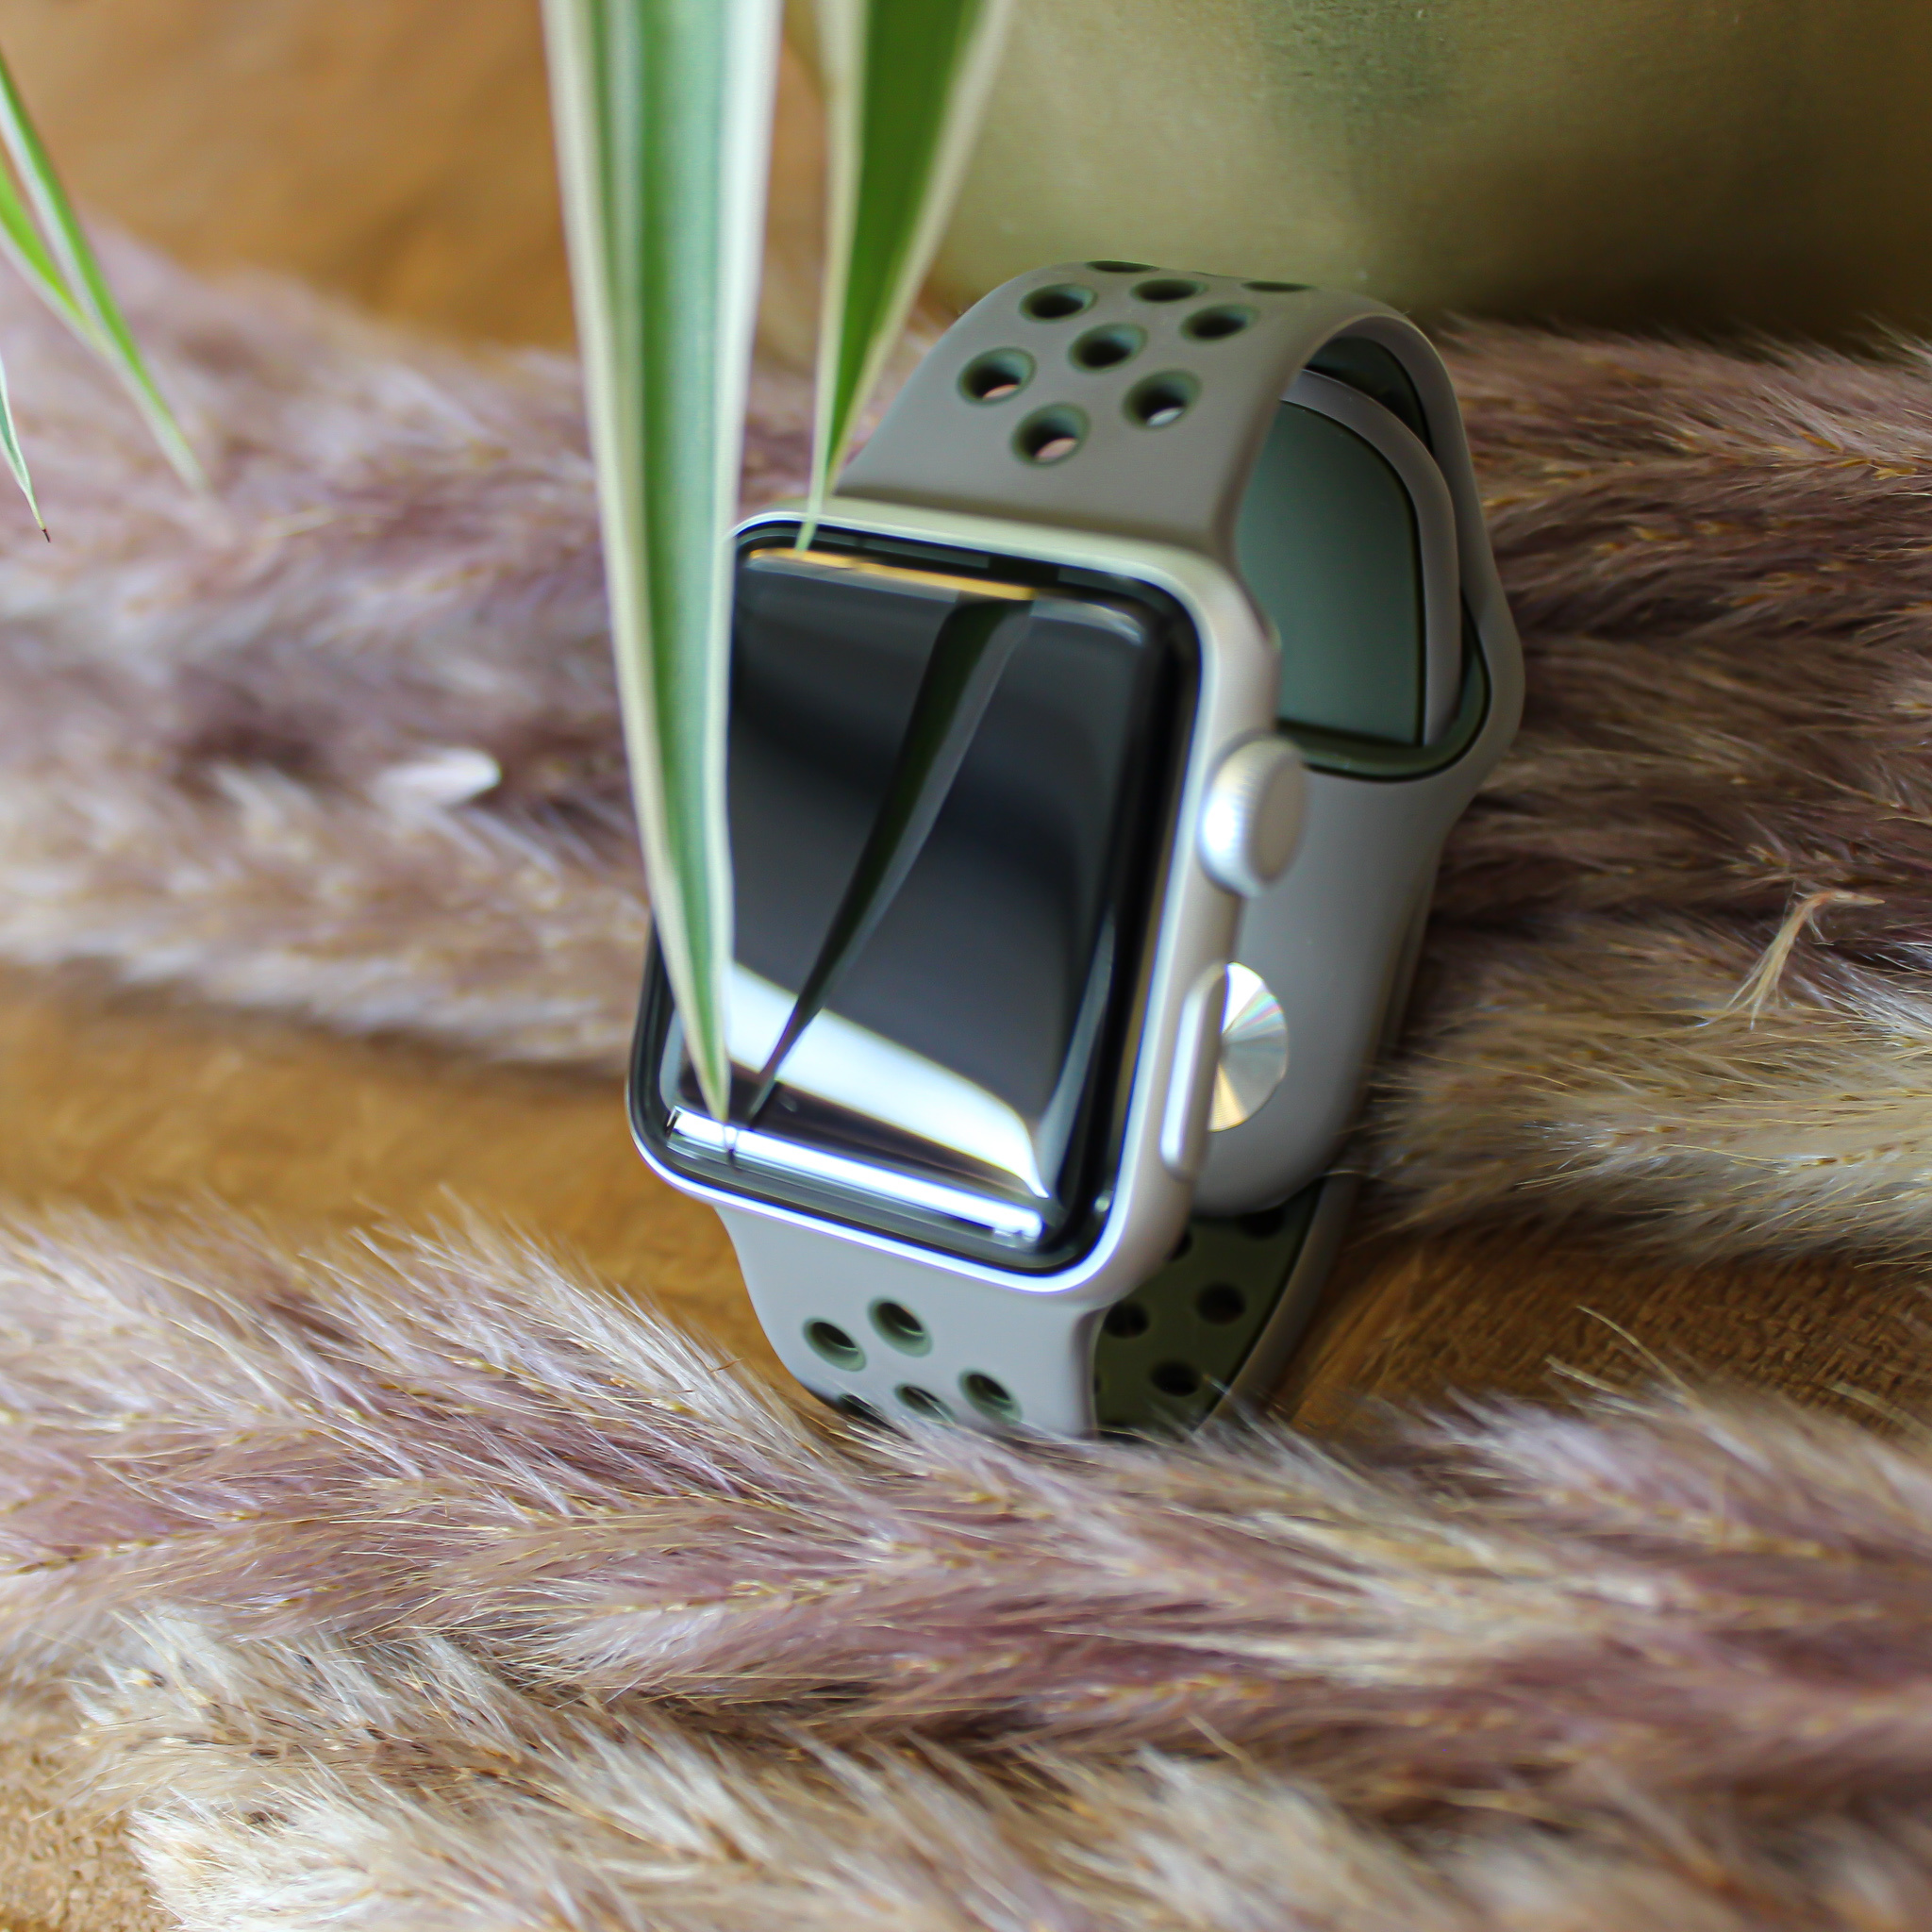  Apple Watch dupla sport pánt - olíva szürke khaki